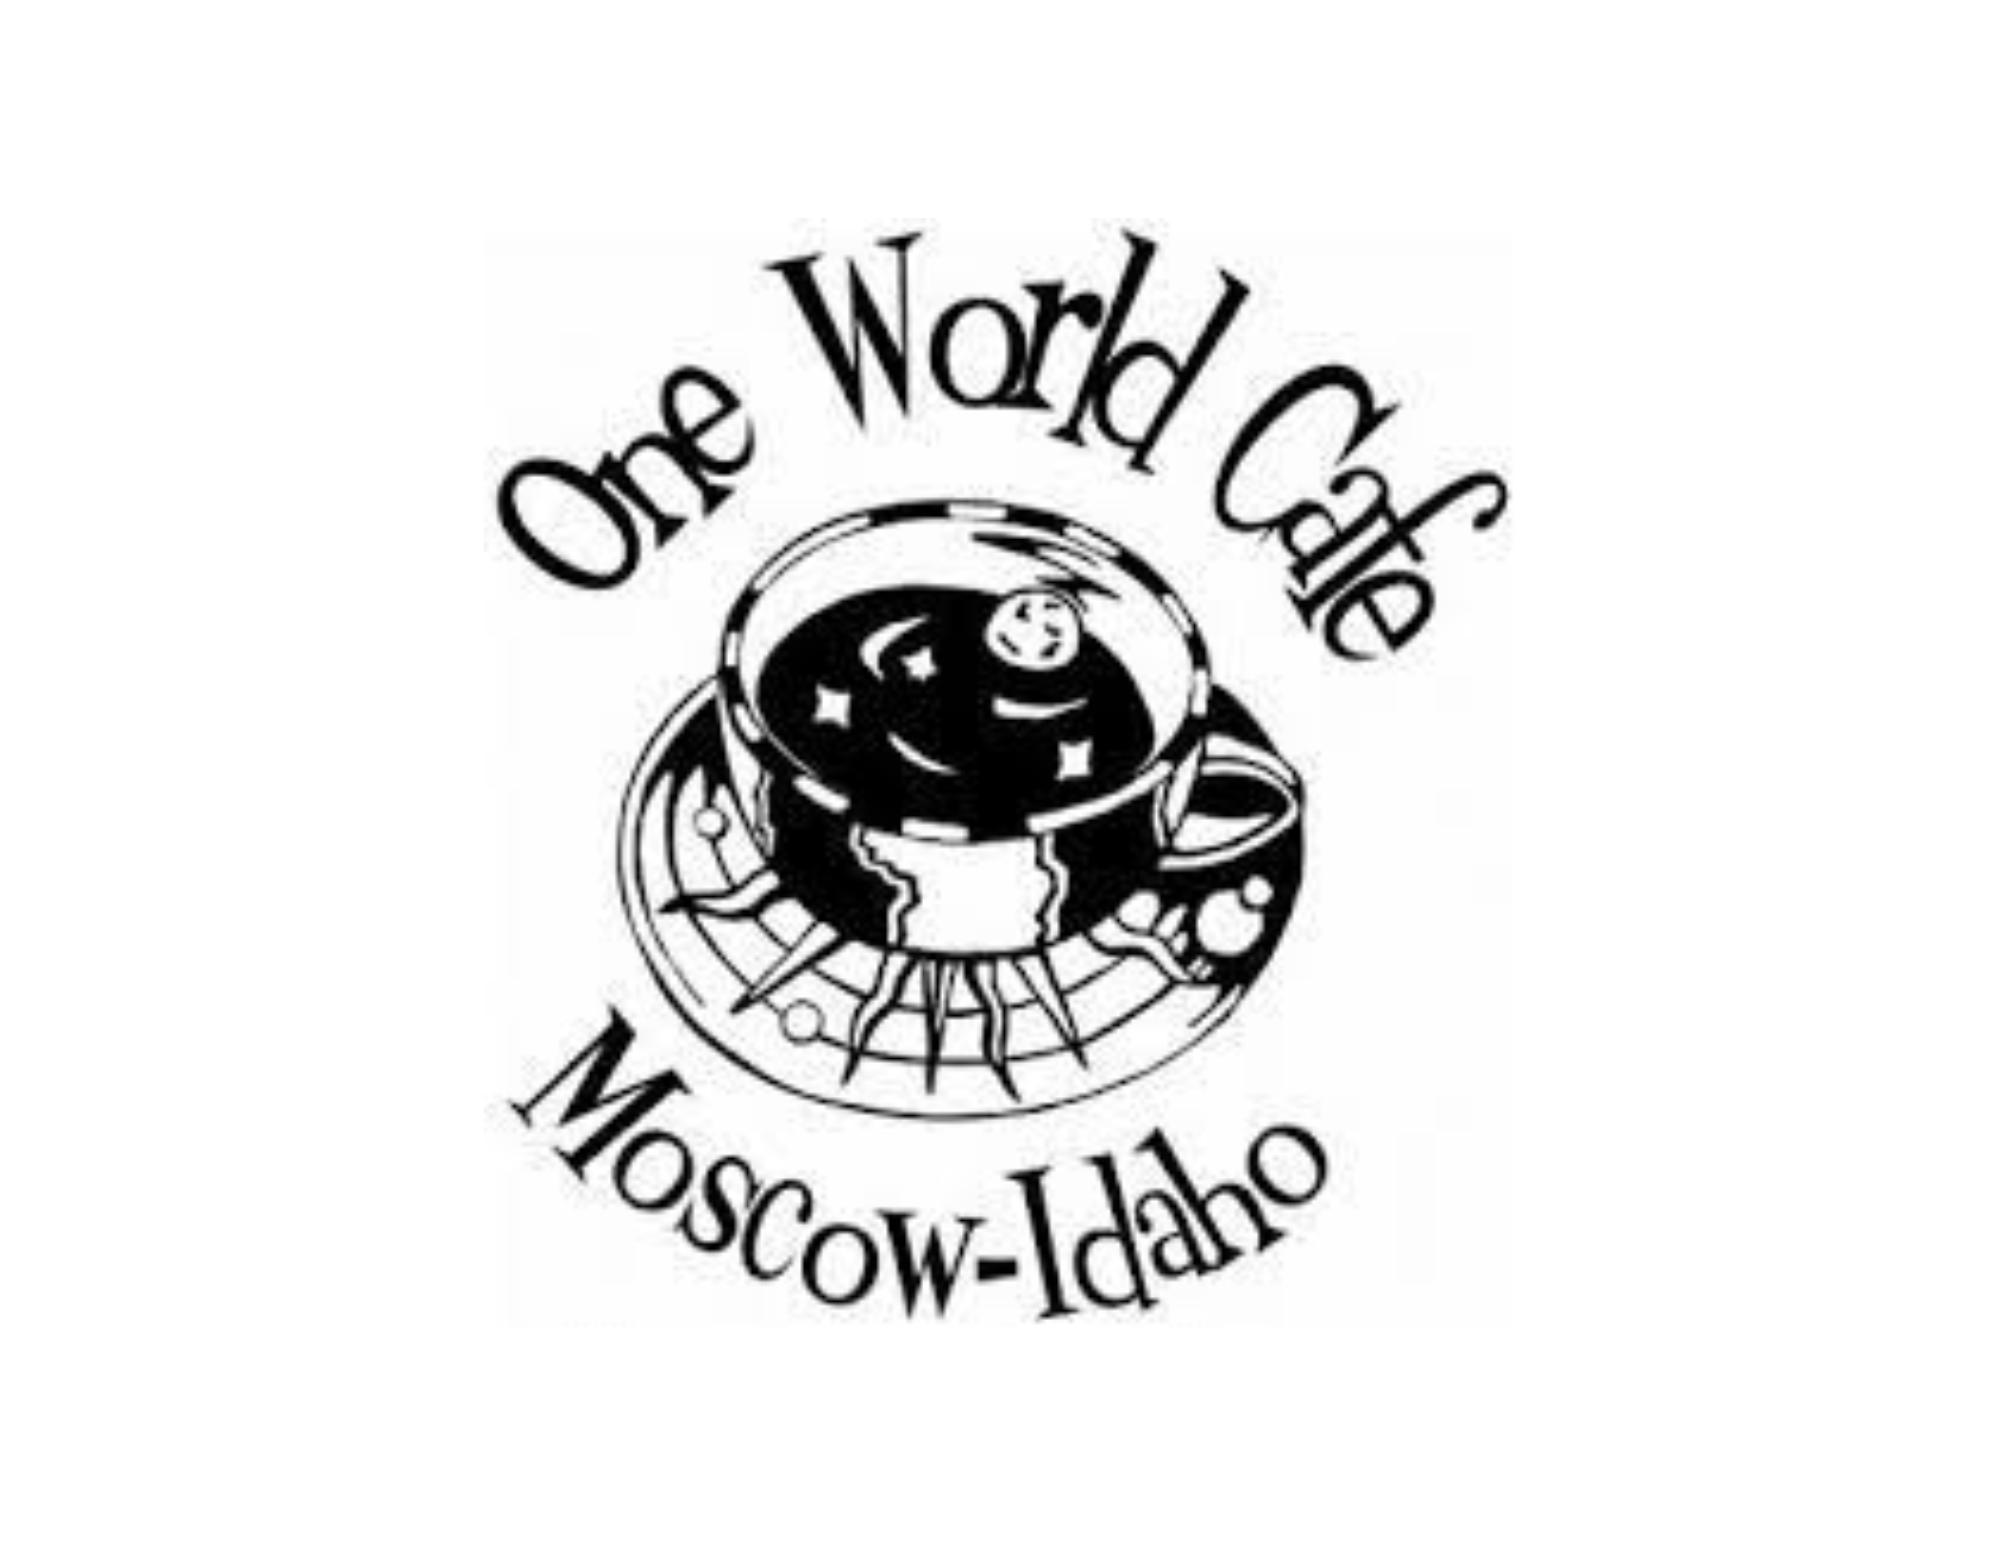 One World Cafe